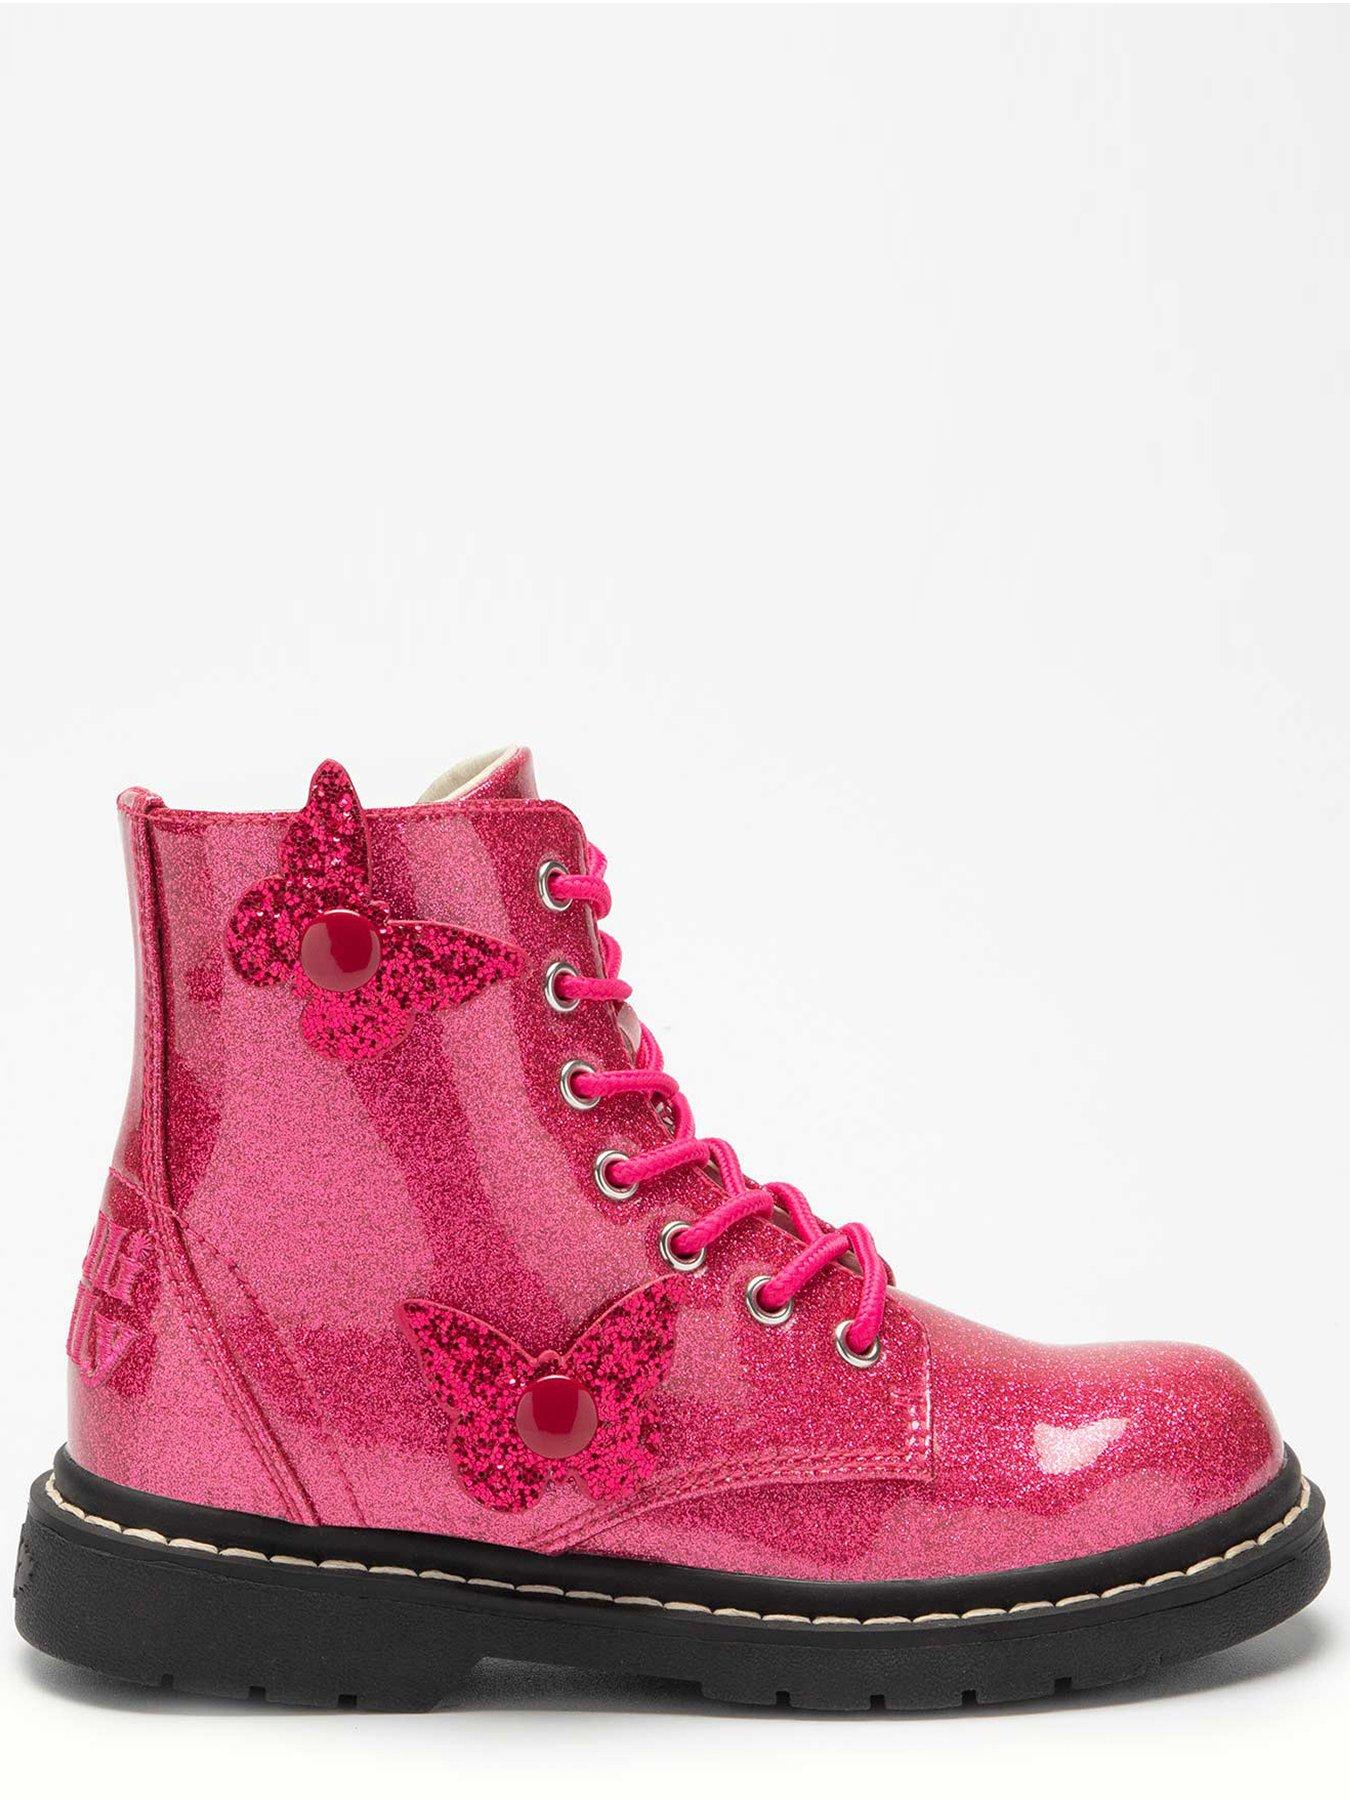 Lelli Kelly Girls Glitter Fairy Wings Ankle Boot Pink Glitter Very Co Uk